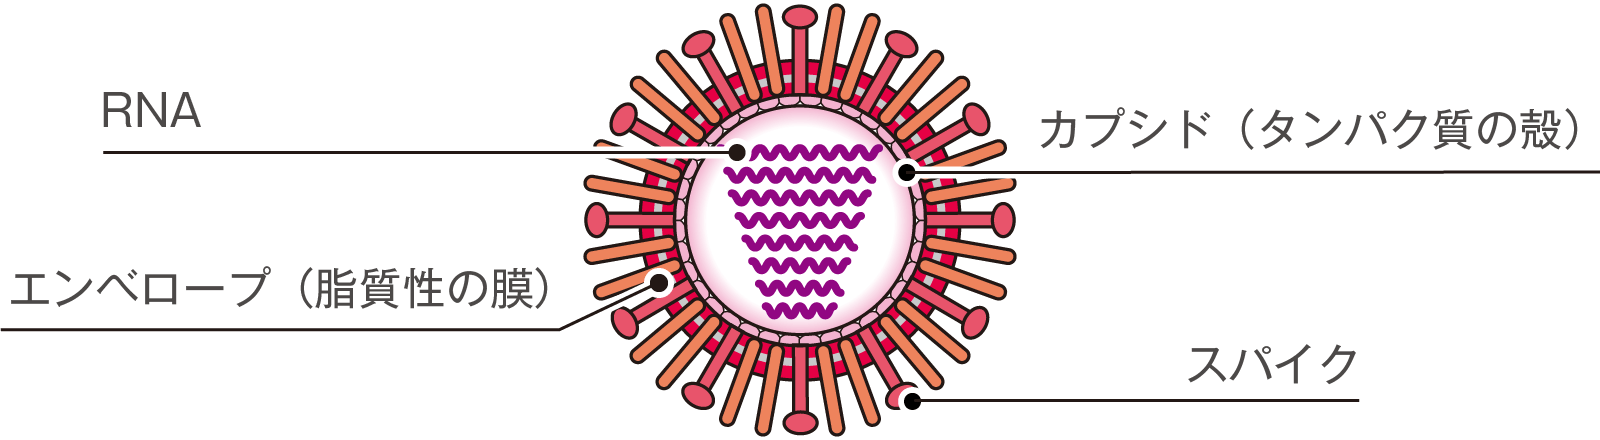 【研究】新型コロナウイルスは免疫細胞を無効化することが判明